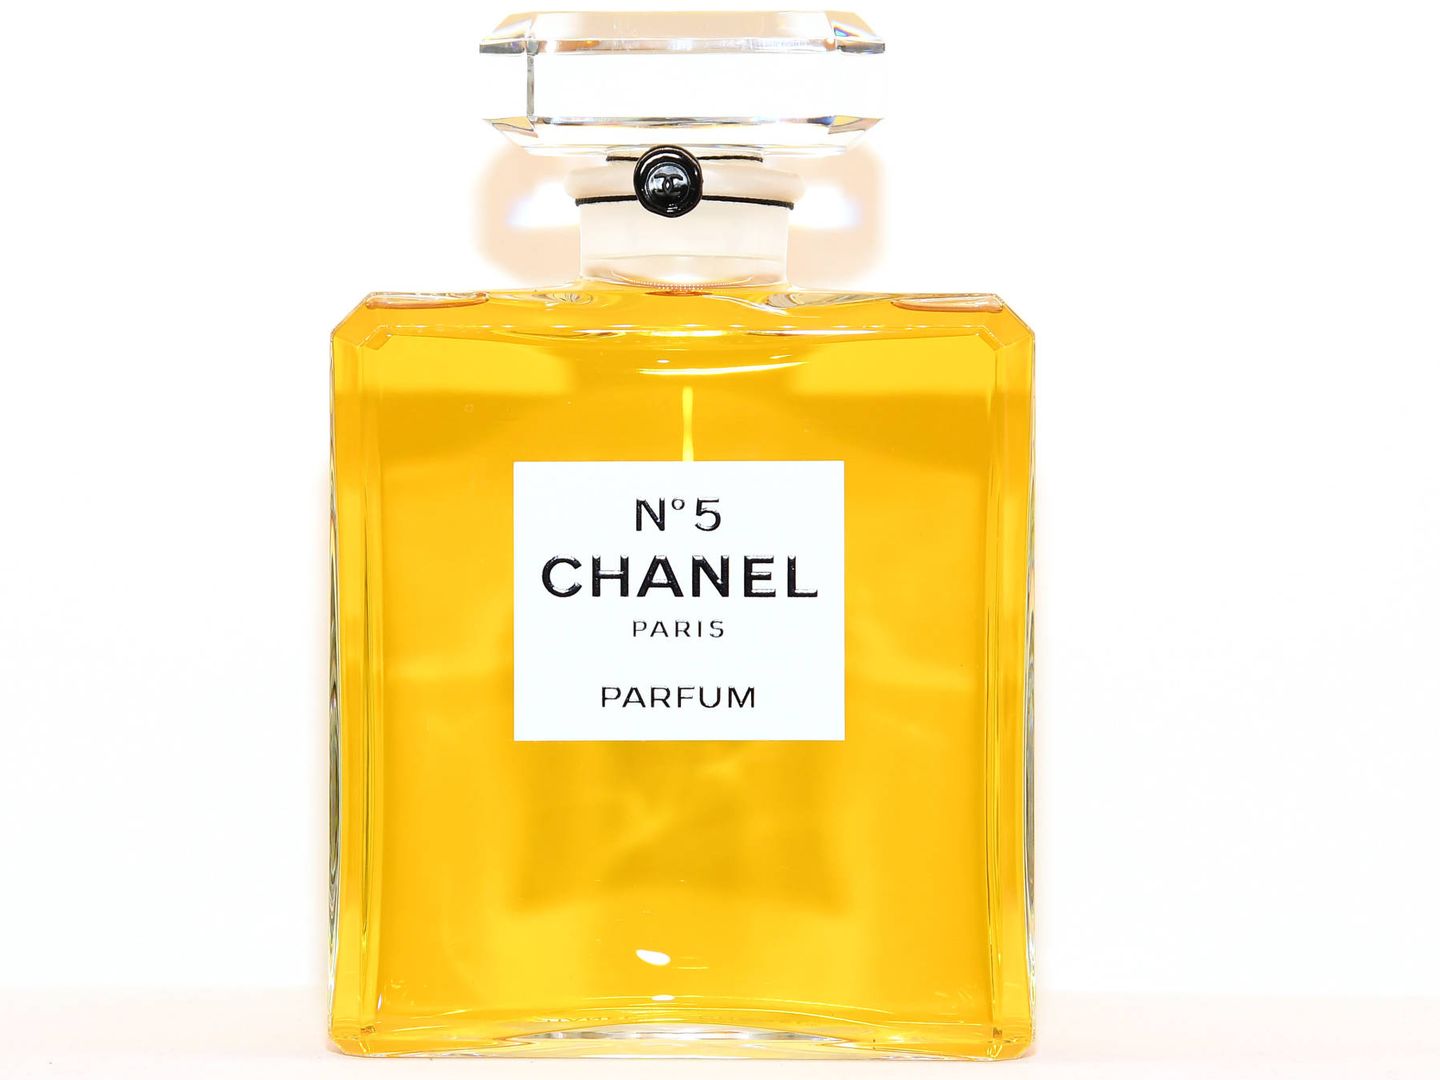 Perfume Chanel Nº5, creación de Coco Chanel. (Getty)